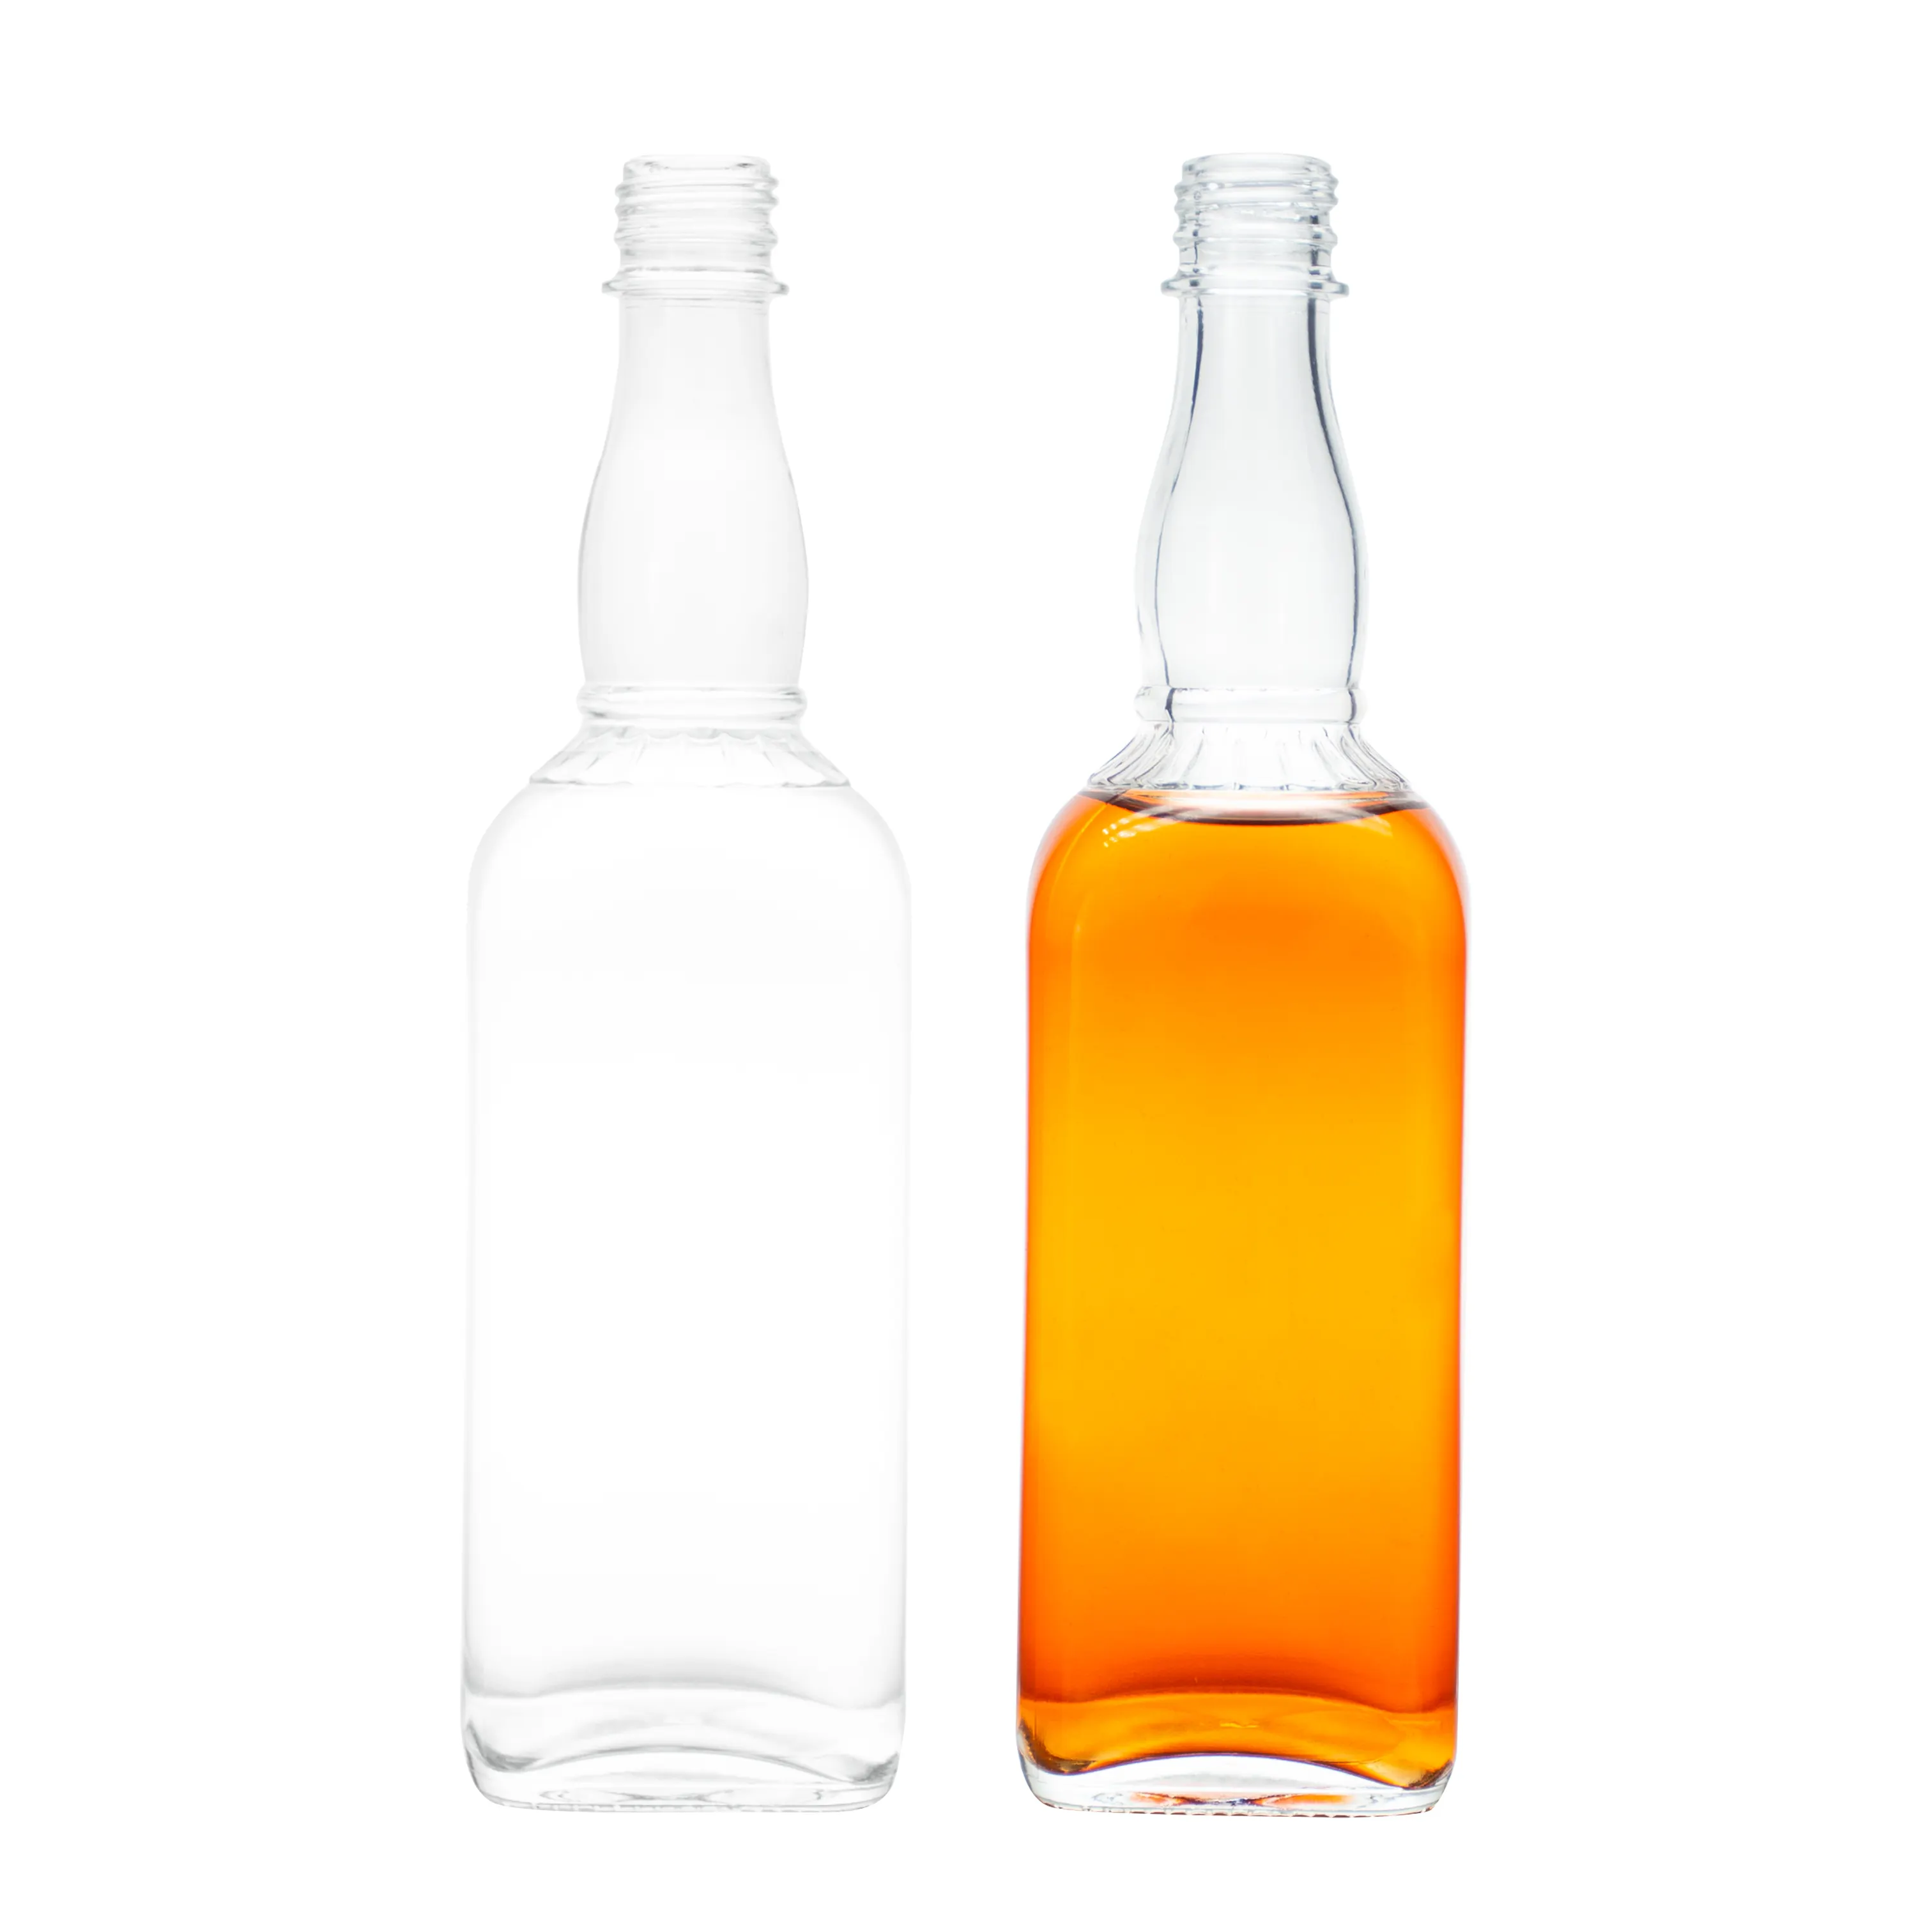 ماكينة تصفيح زجاجات الويسكي الفاخرة الجديدة المقاومة للماء عالية الجودة إصدار خاص من زجاجات الويسكي